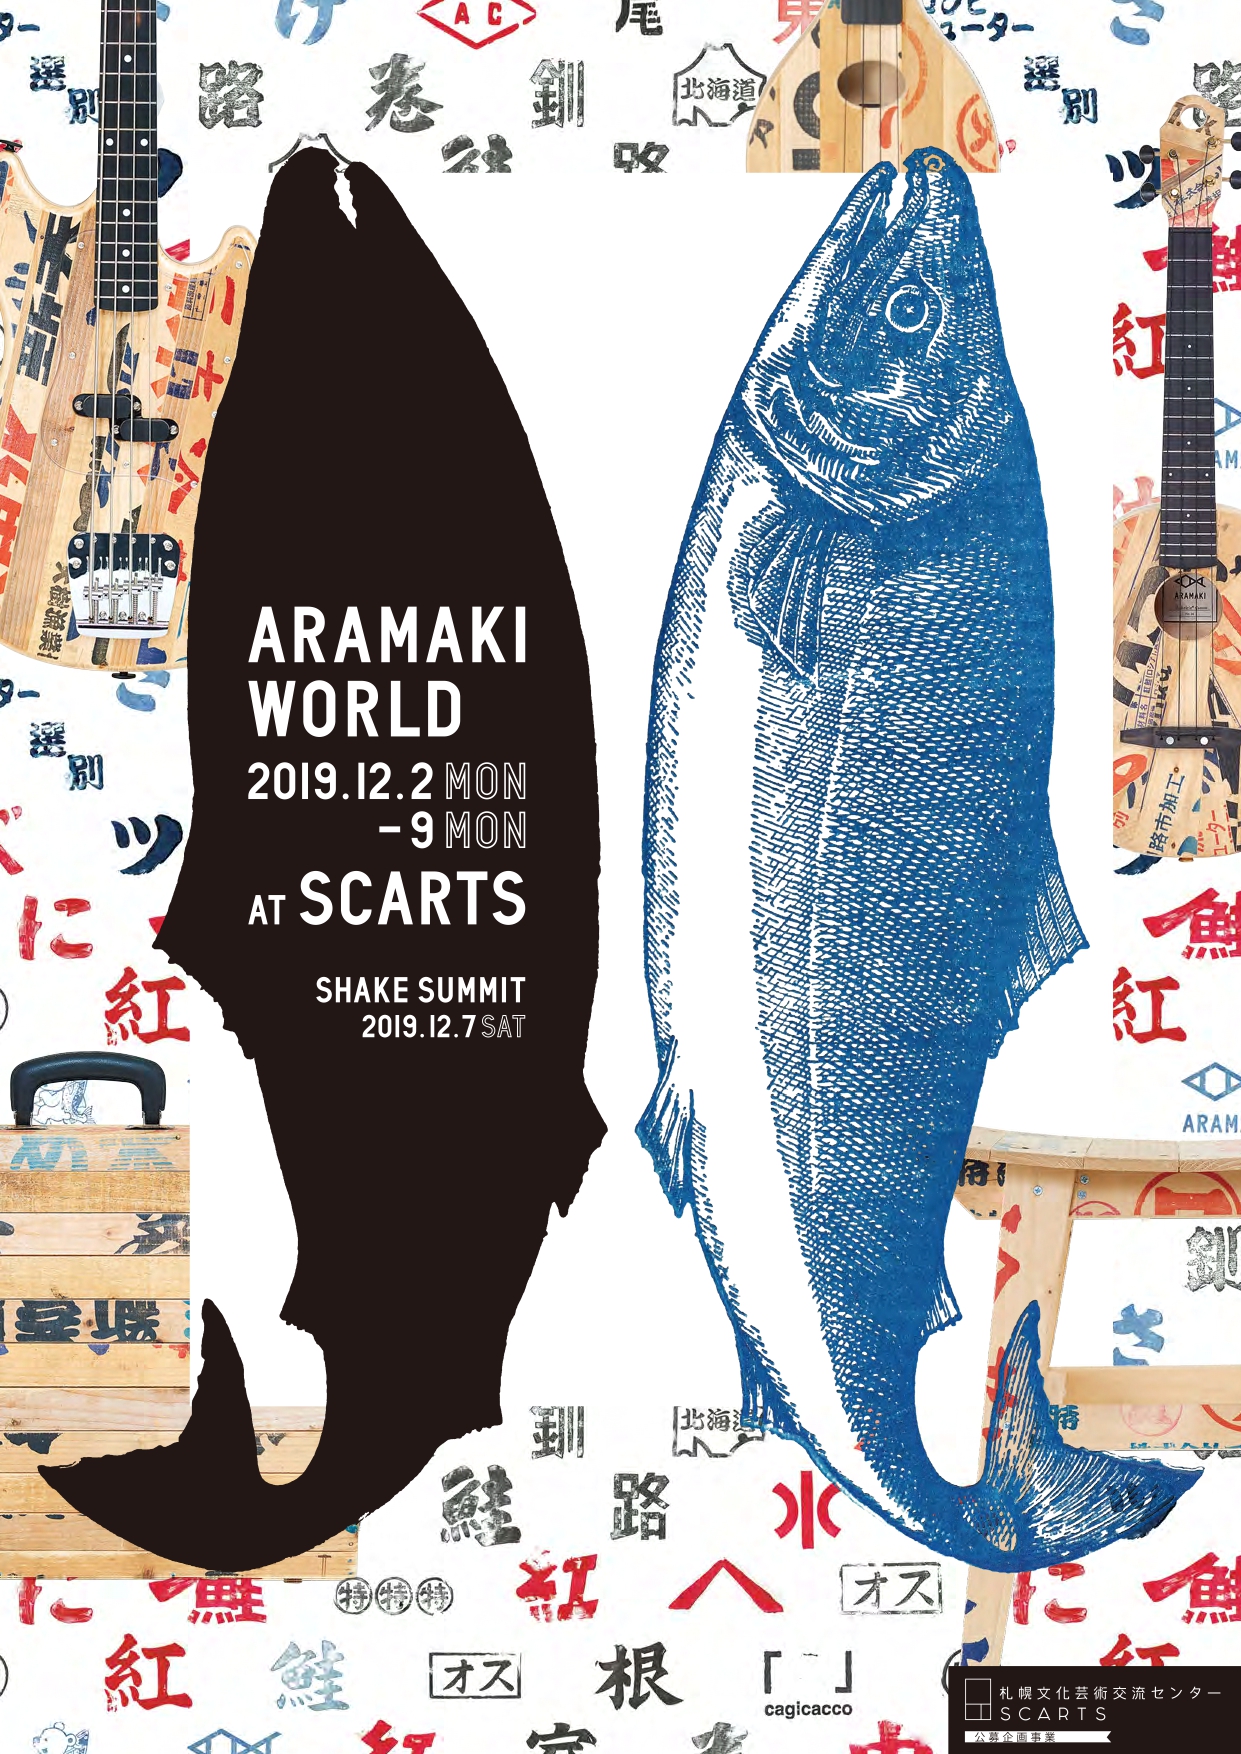 SCARTS公募企画事業「ARAMAKI WORLD + SHAKE SUMMIT」のイメージ1枚目